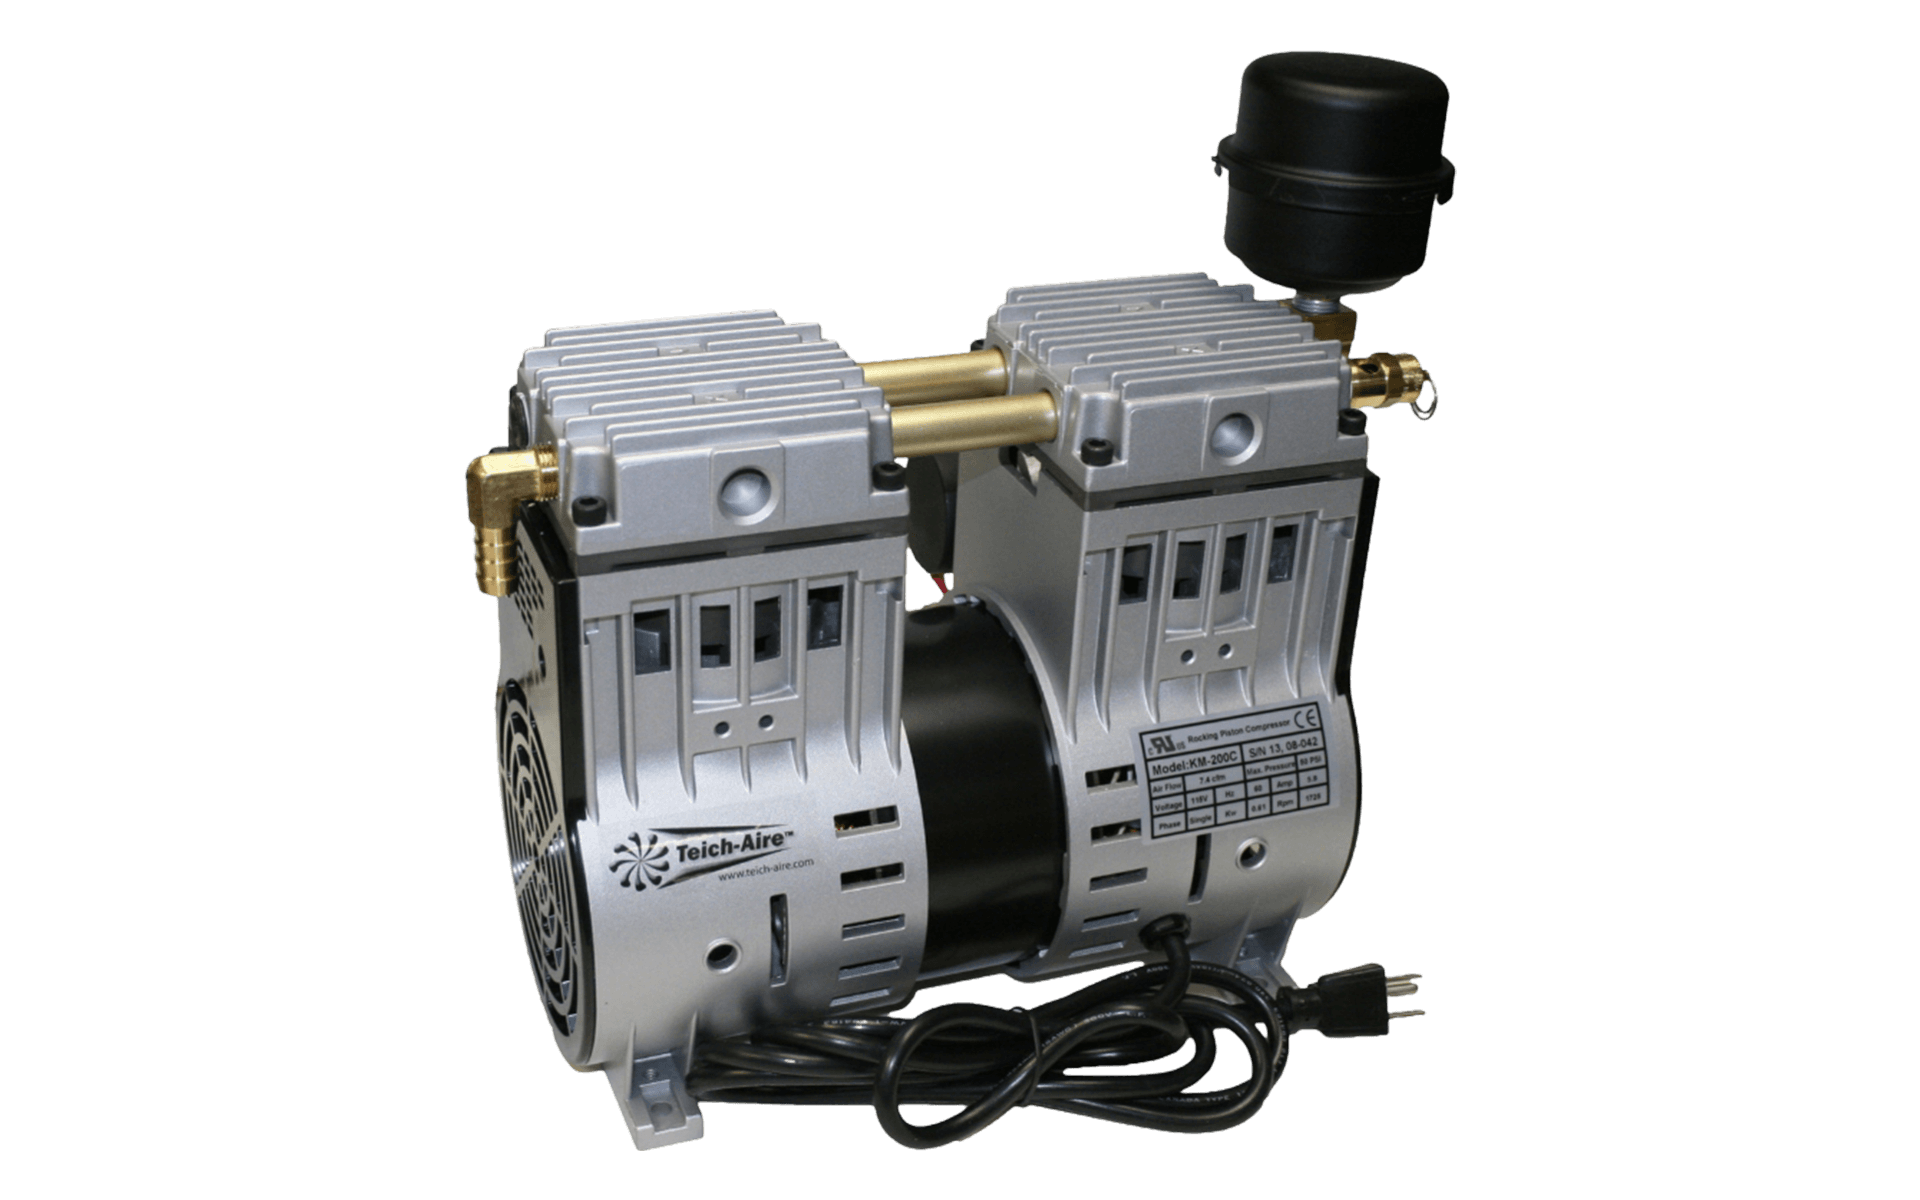 Teich-Aire KM-200 3/4 HP Dugout Aeration Compressor (120V)